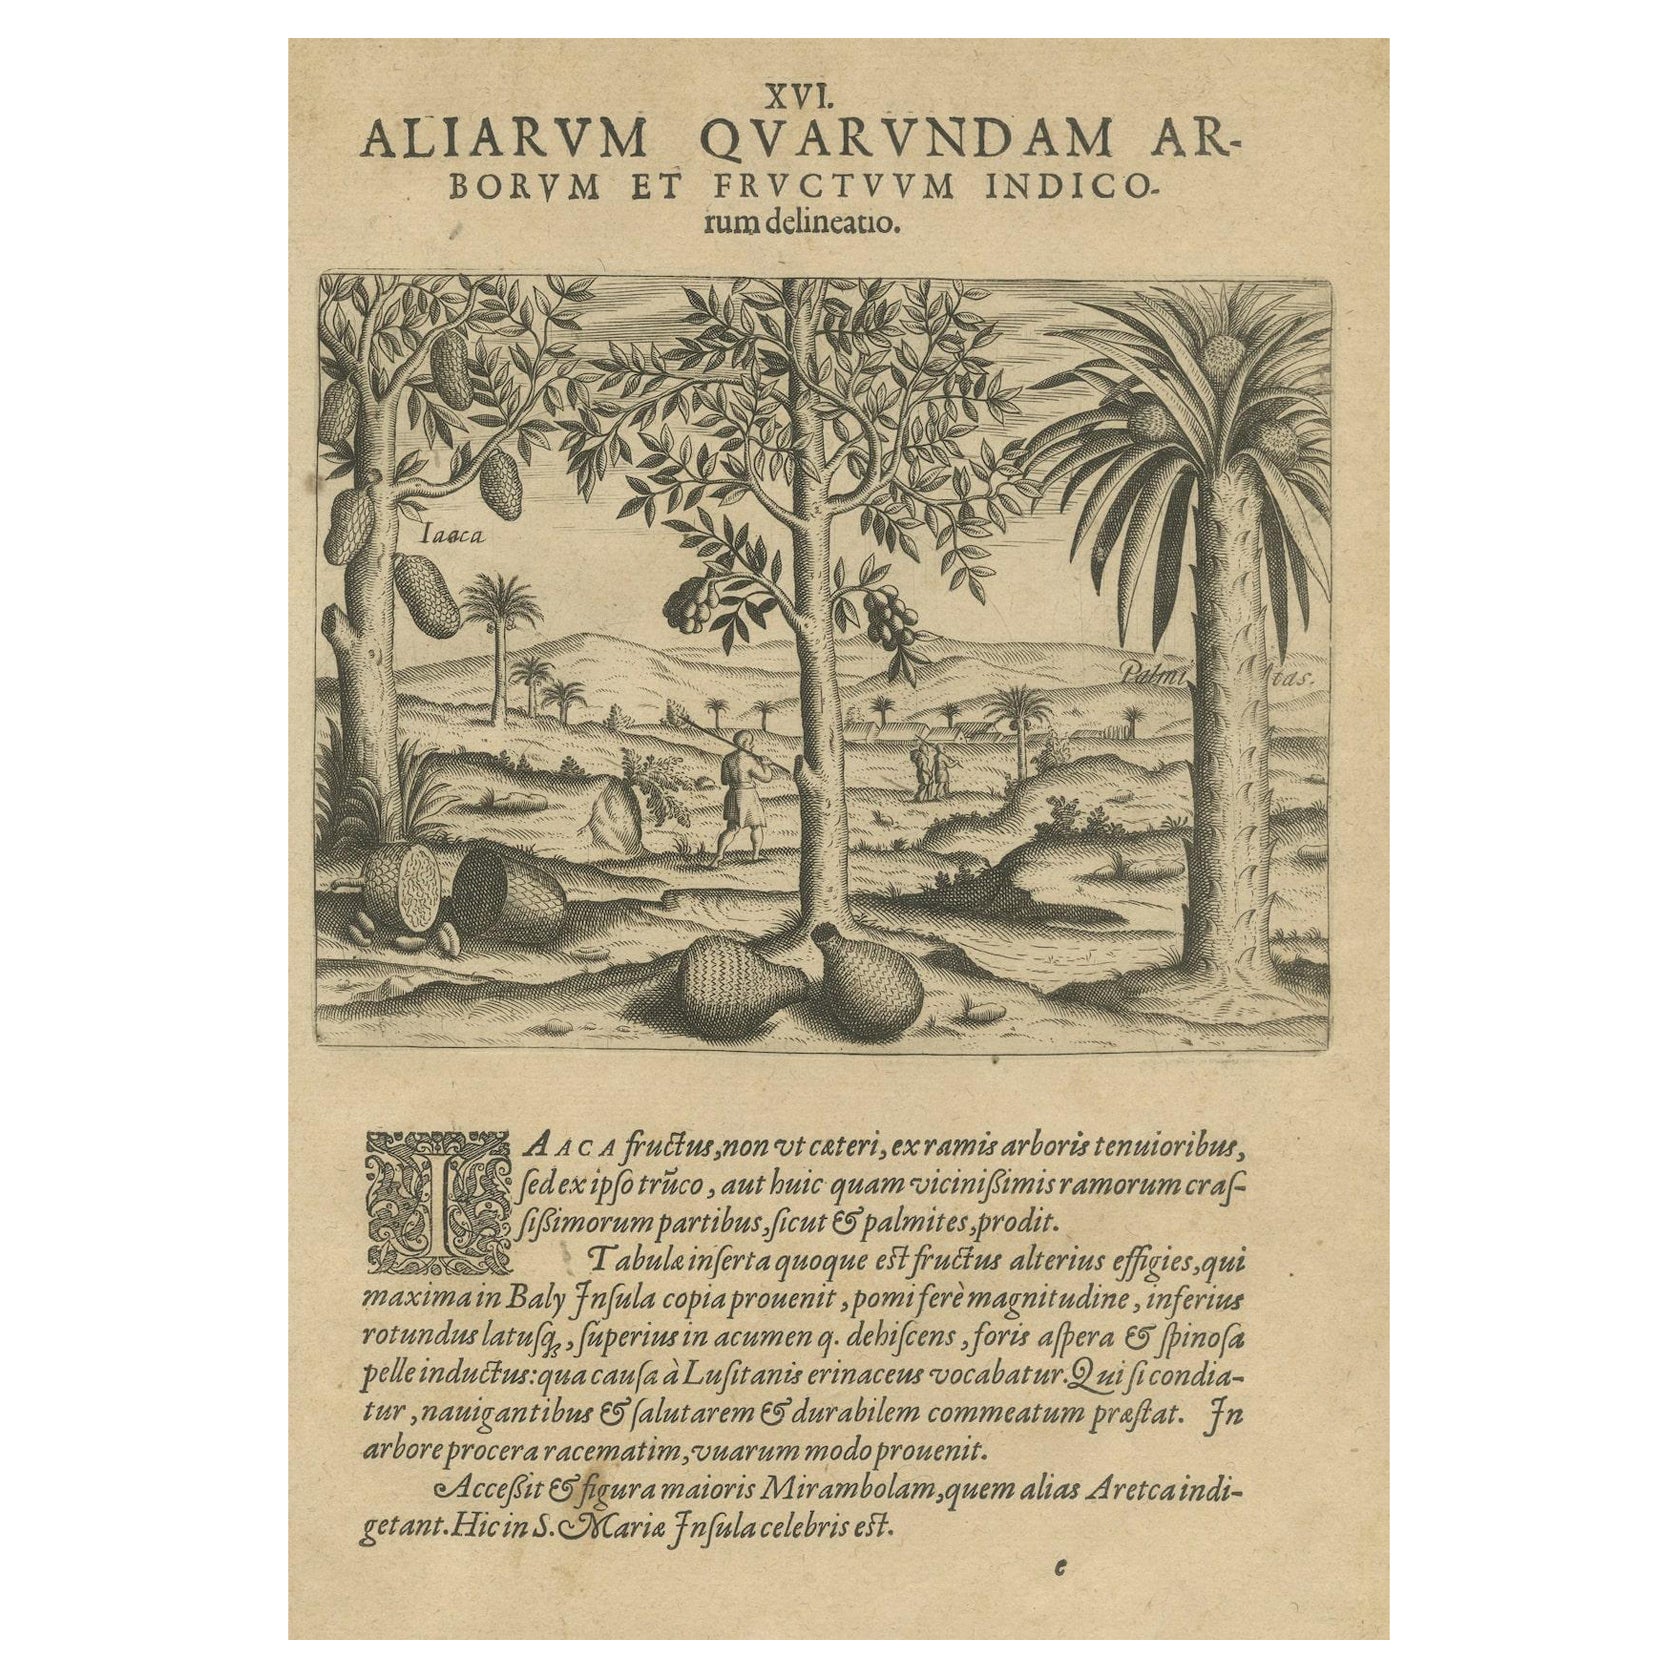 Tropische Fülle: Die Jackfruit und die Palmenbäume in De Brys Gravur von 1601